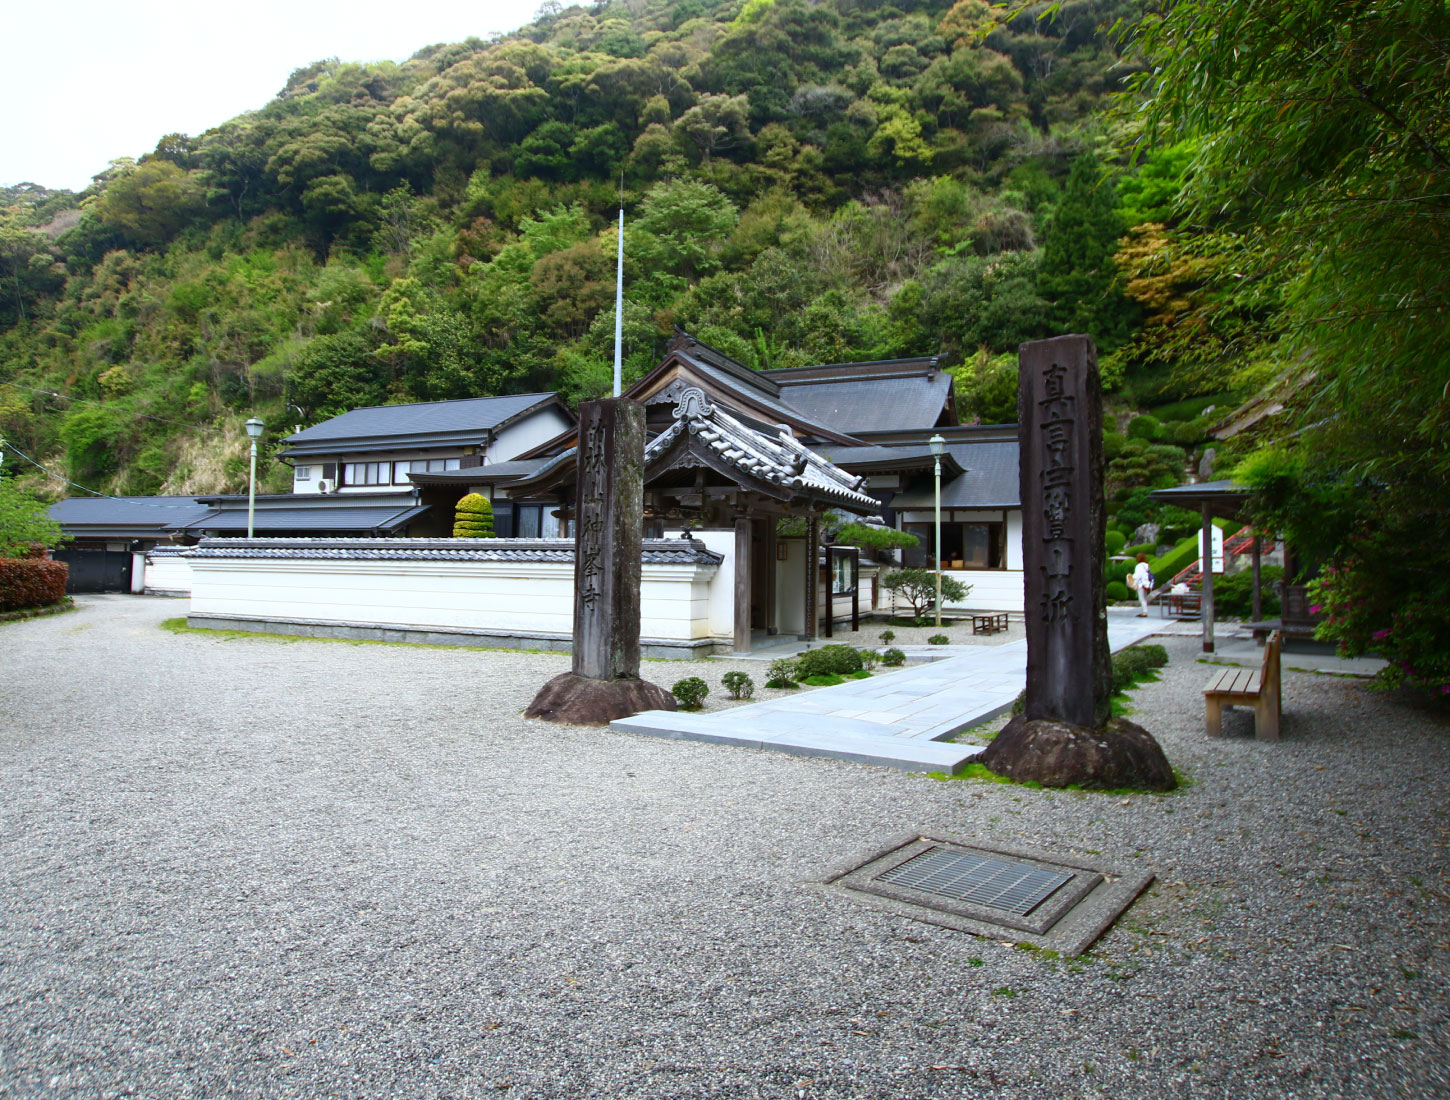 竹林山 地蔵院 神峯寺